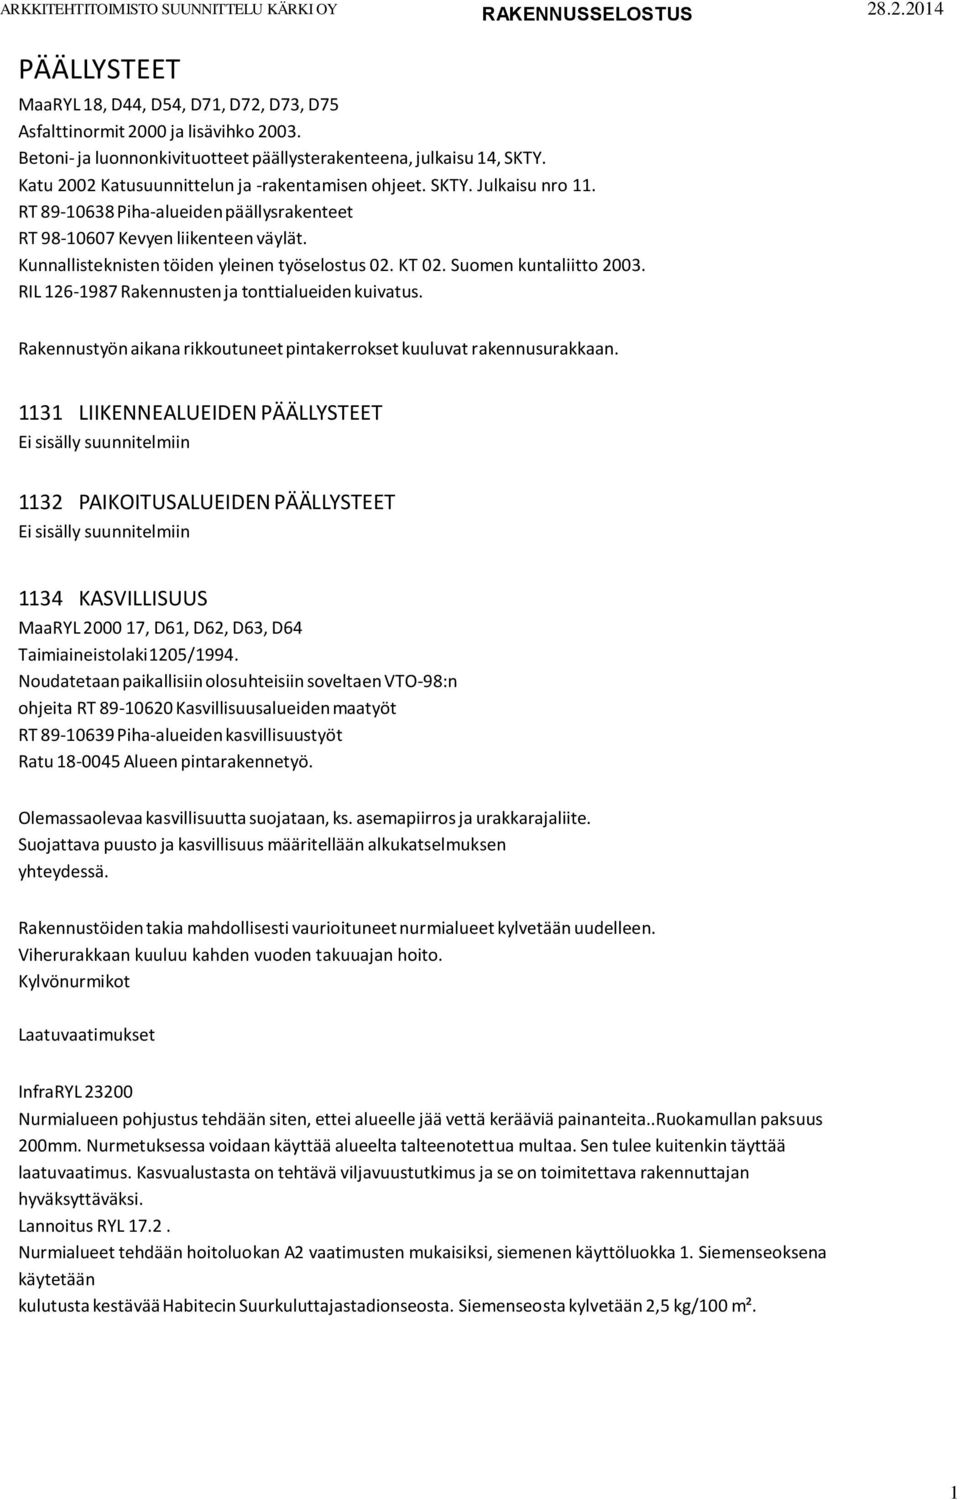 Kunnallisteknisten töiden yleinen työselostus 02. KT 02. Suomen kuntaliitto 2003. RIL 126-1987 Rakennusten ja tonttialueiden kuivatus.